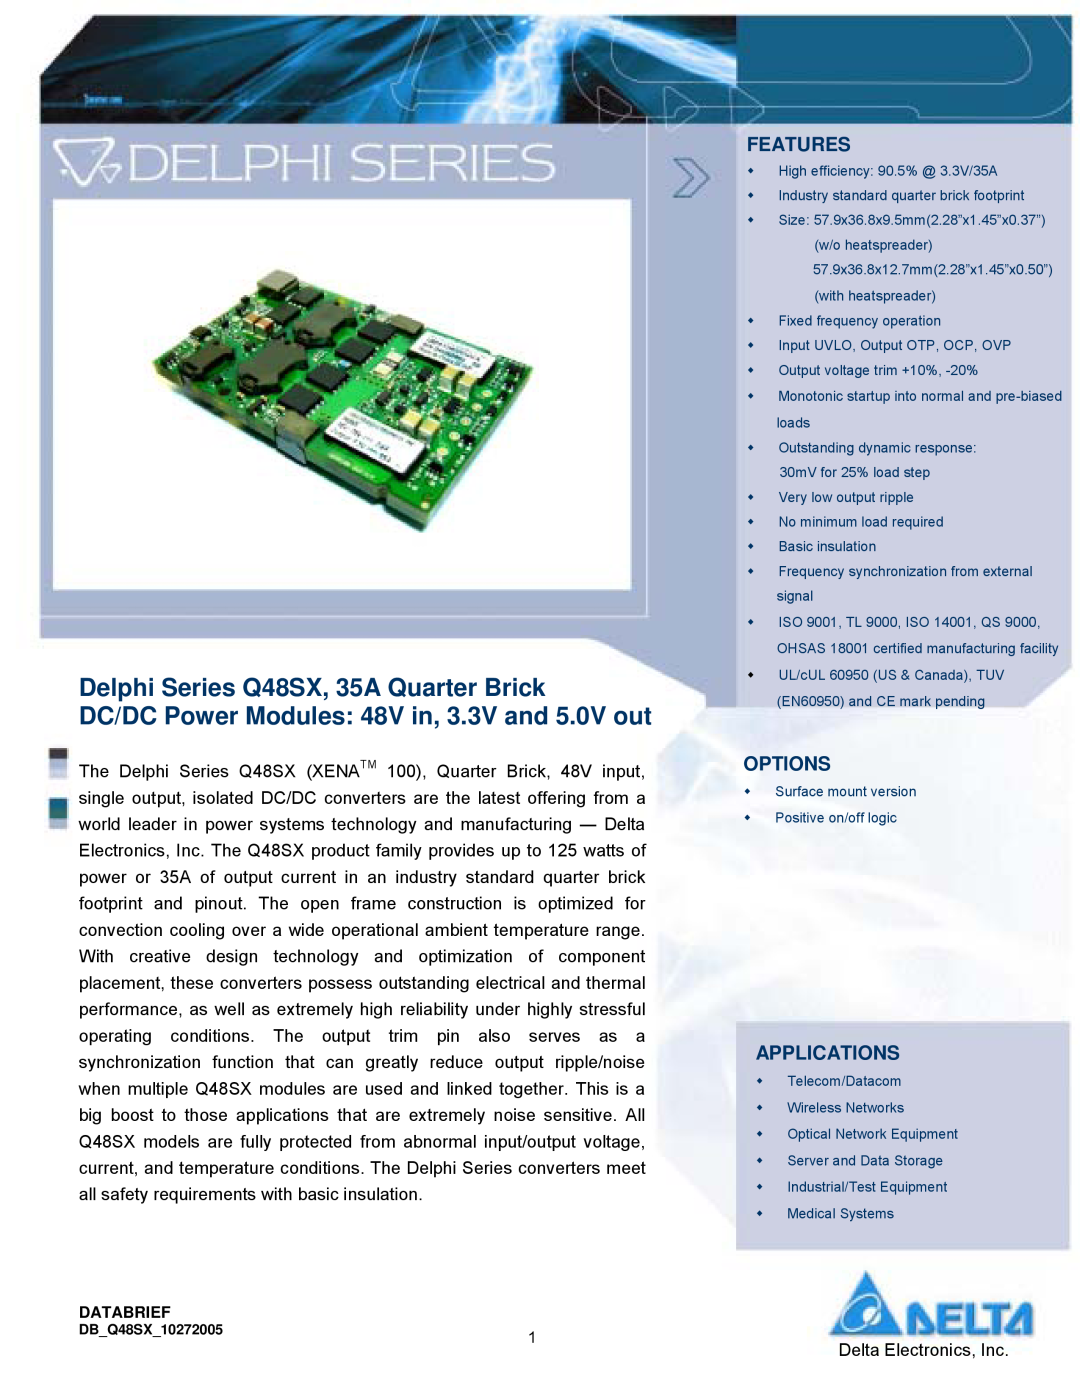 Delta Electronics manual Features, Options, Applications, Delphi Series Q48SX, 35A Quarter Brick 